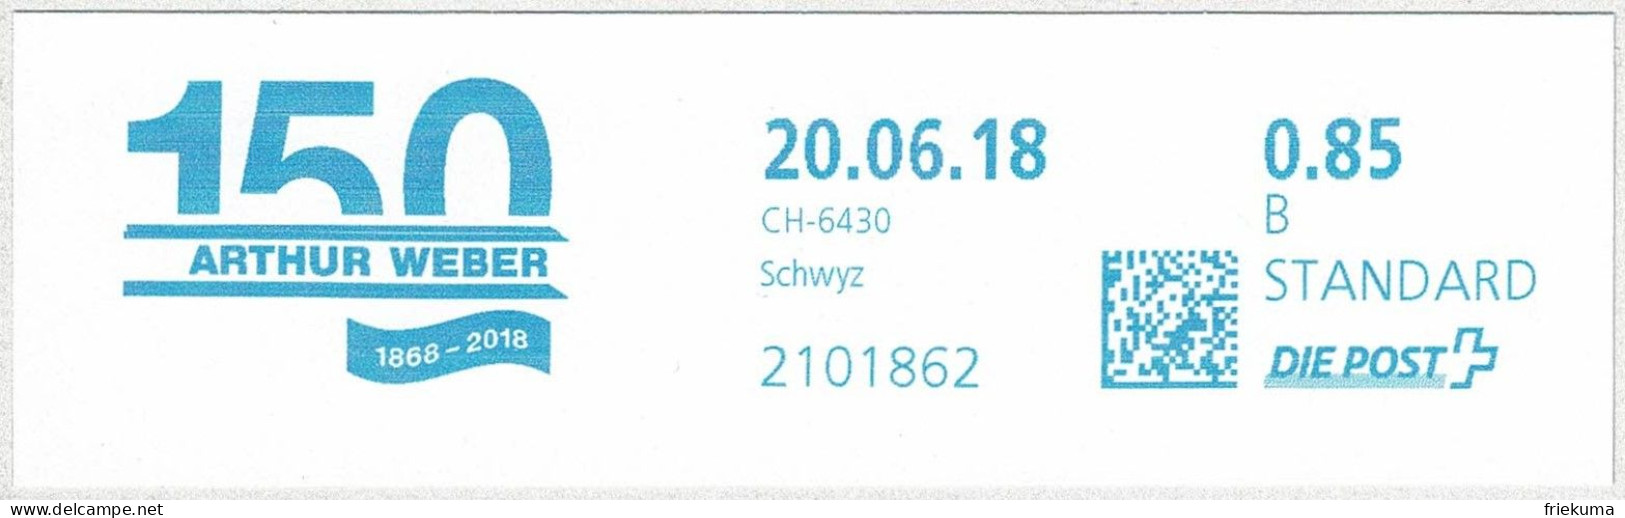 Schweiz / Helvetia 2018, Freistempel / EMA / Meterstamp Arthur Weber Schwyz, Handwerkerzentrum - Postage Meters